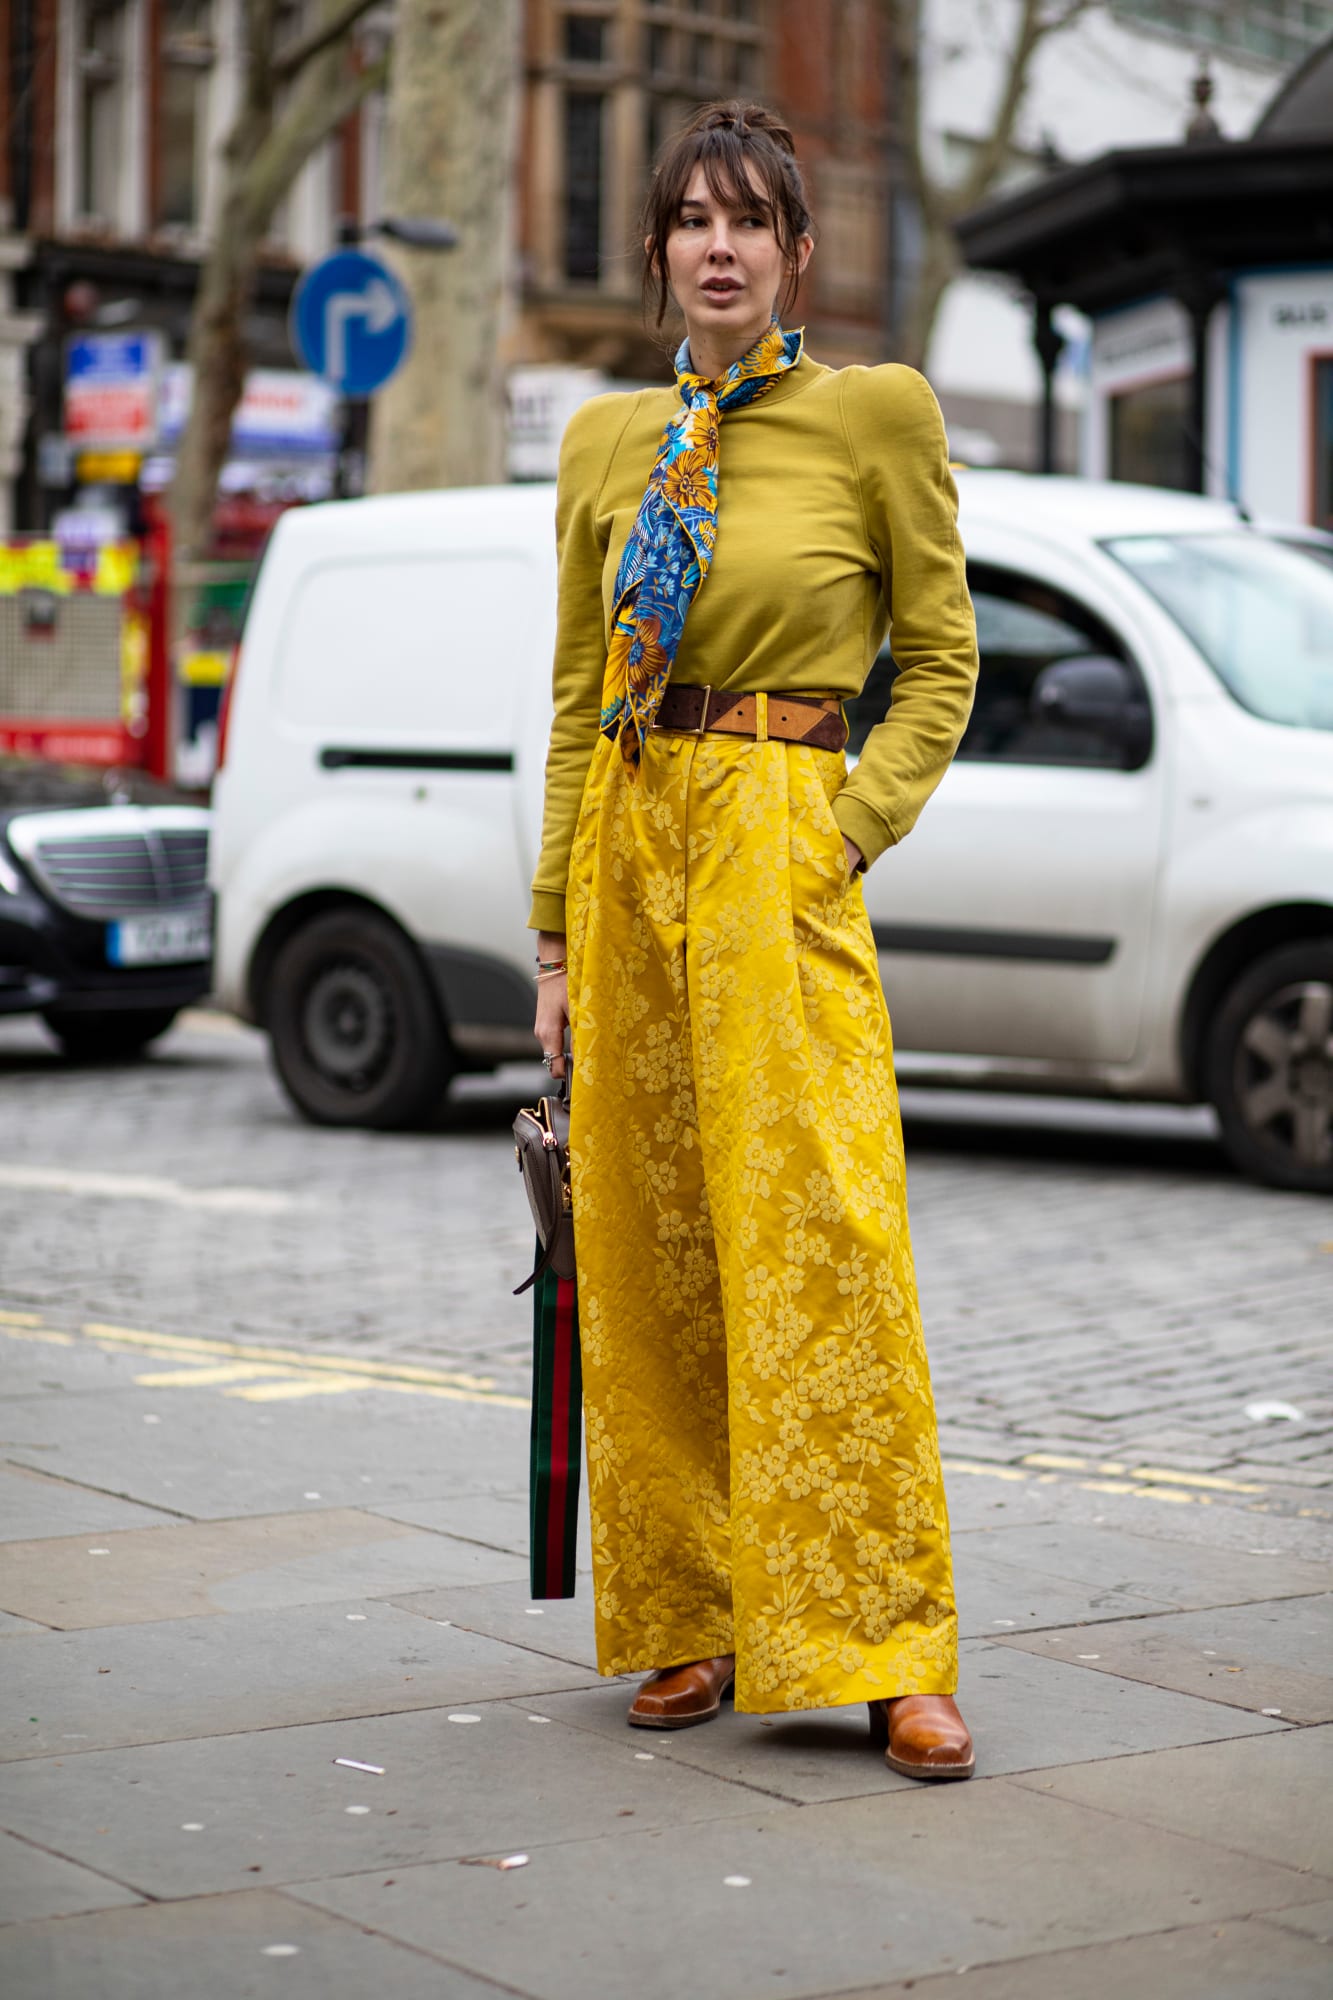 Váy hoa, đầm nhún tưng bừng, sống động trên đường phố London - 15